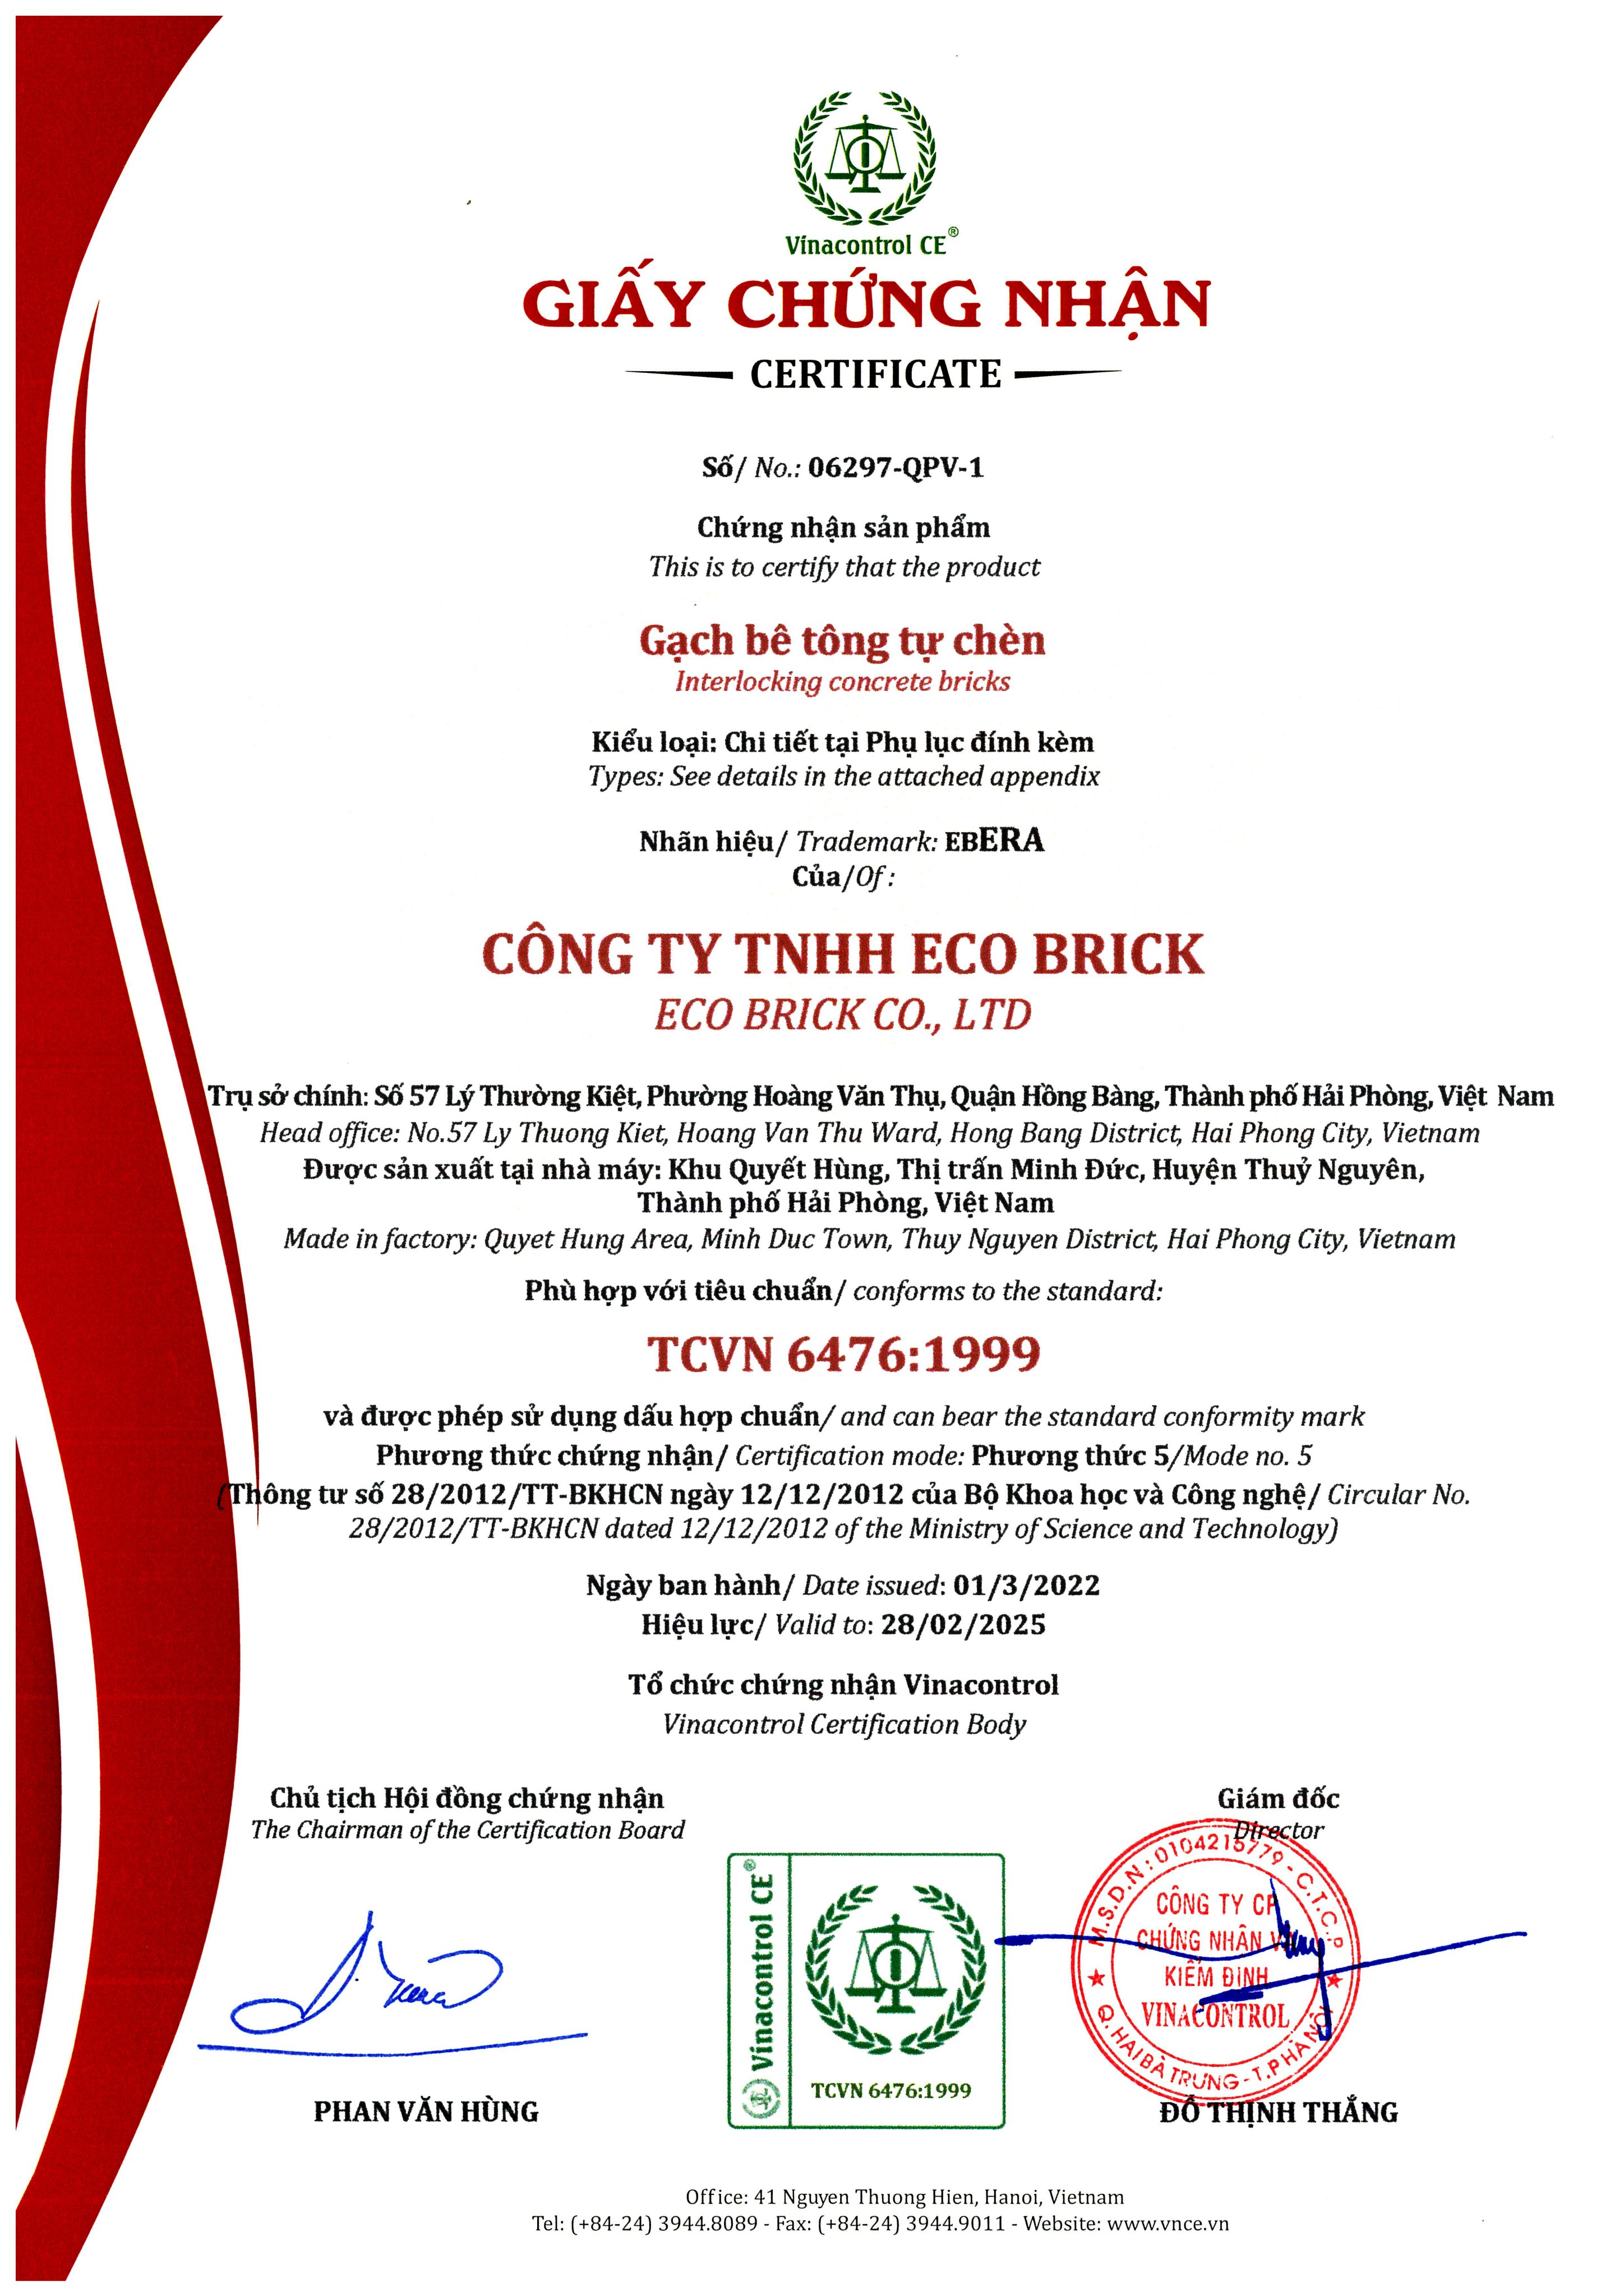 GCN hợp chuẩn gạch bê tông tự chèn (TCVN 6467)